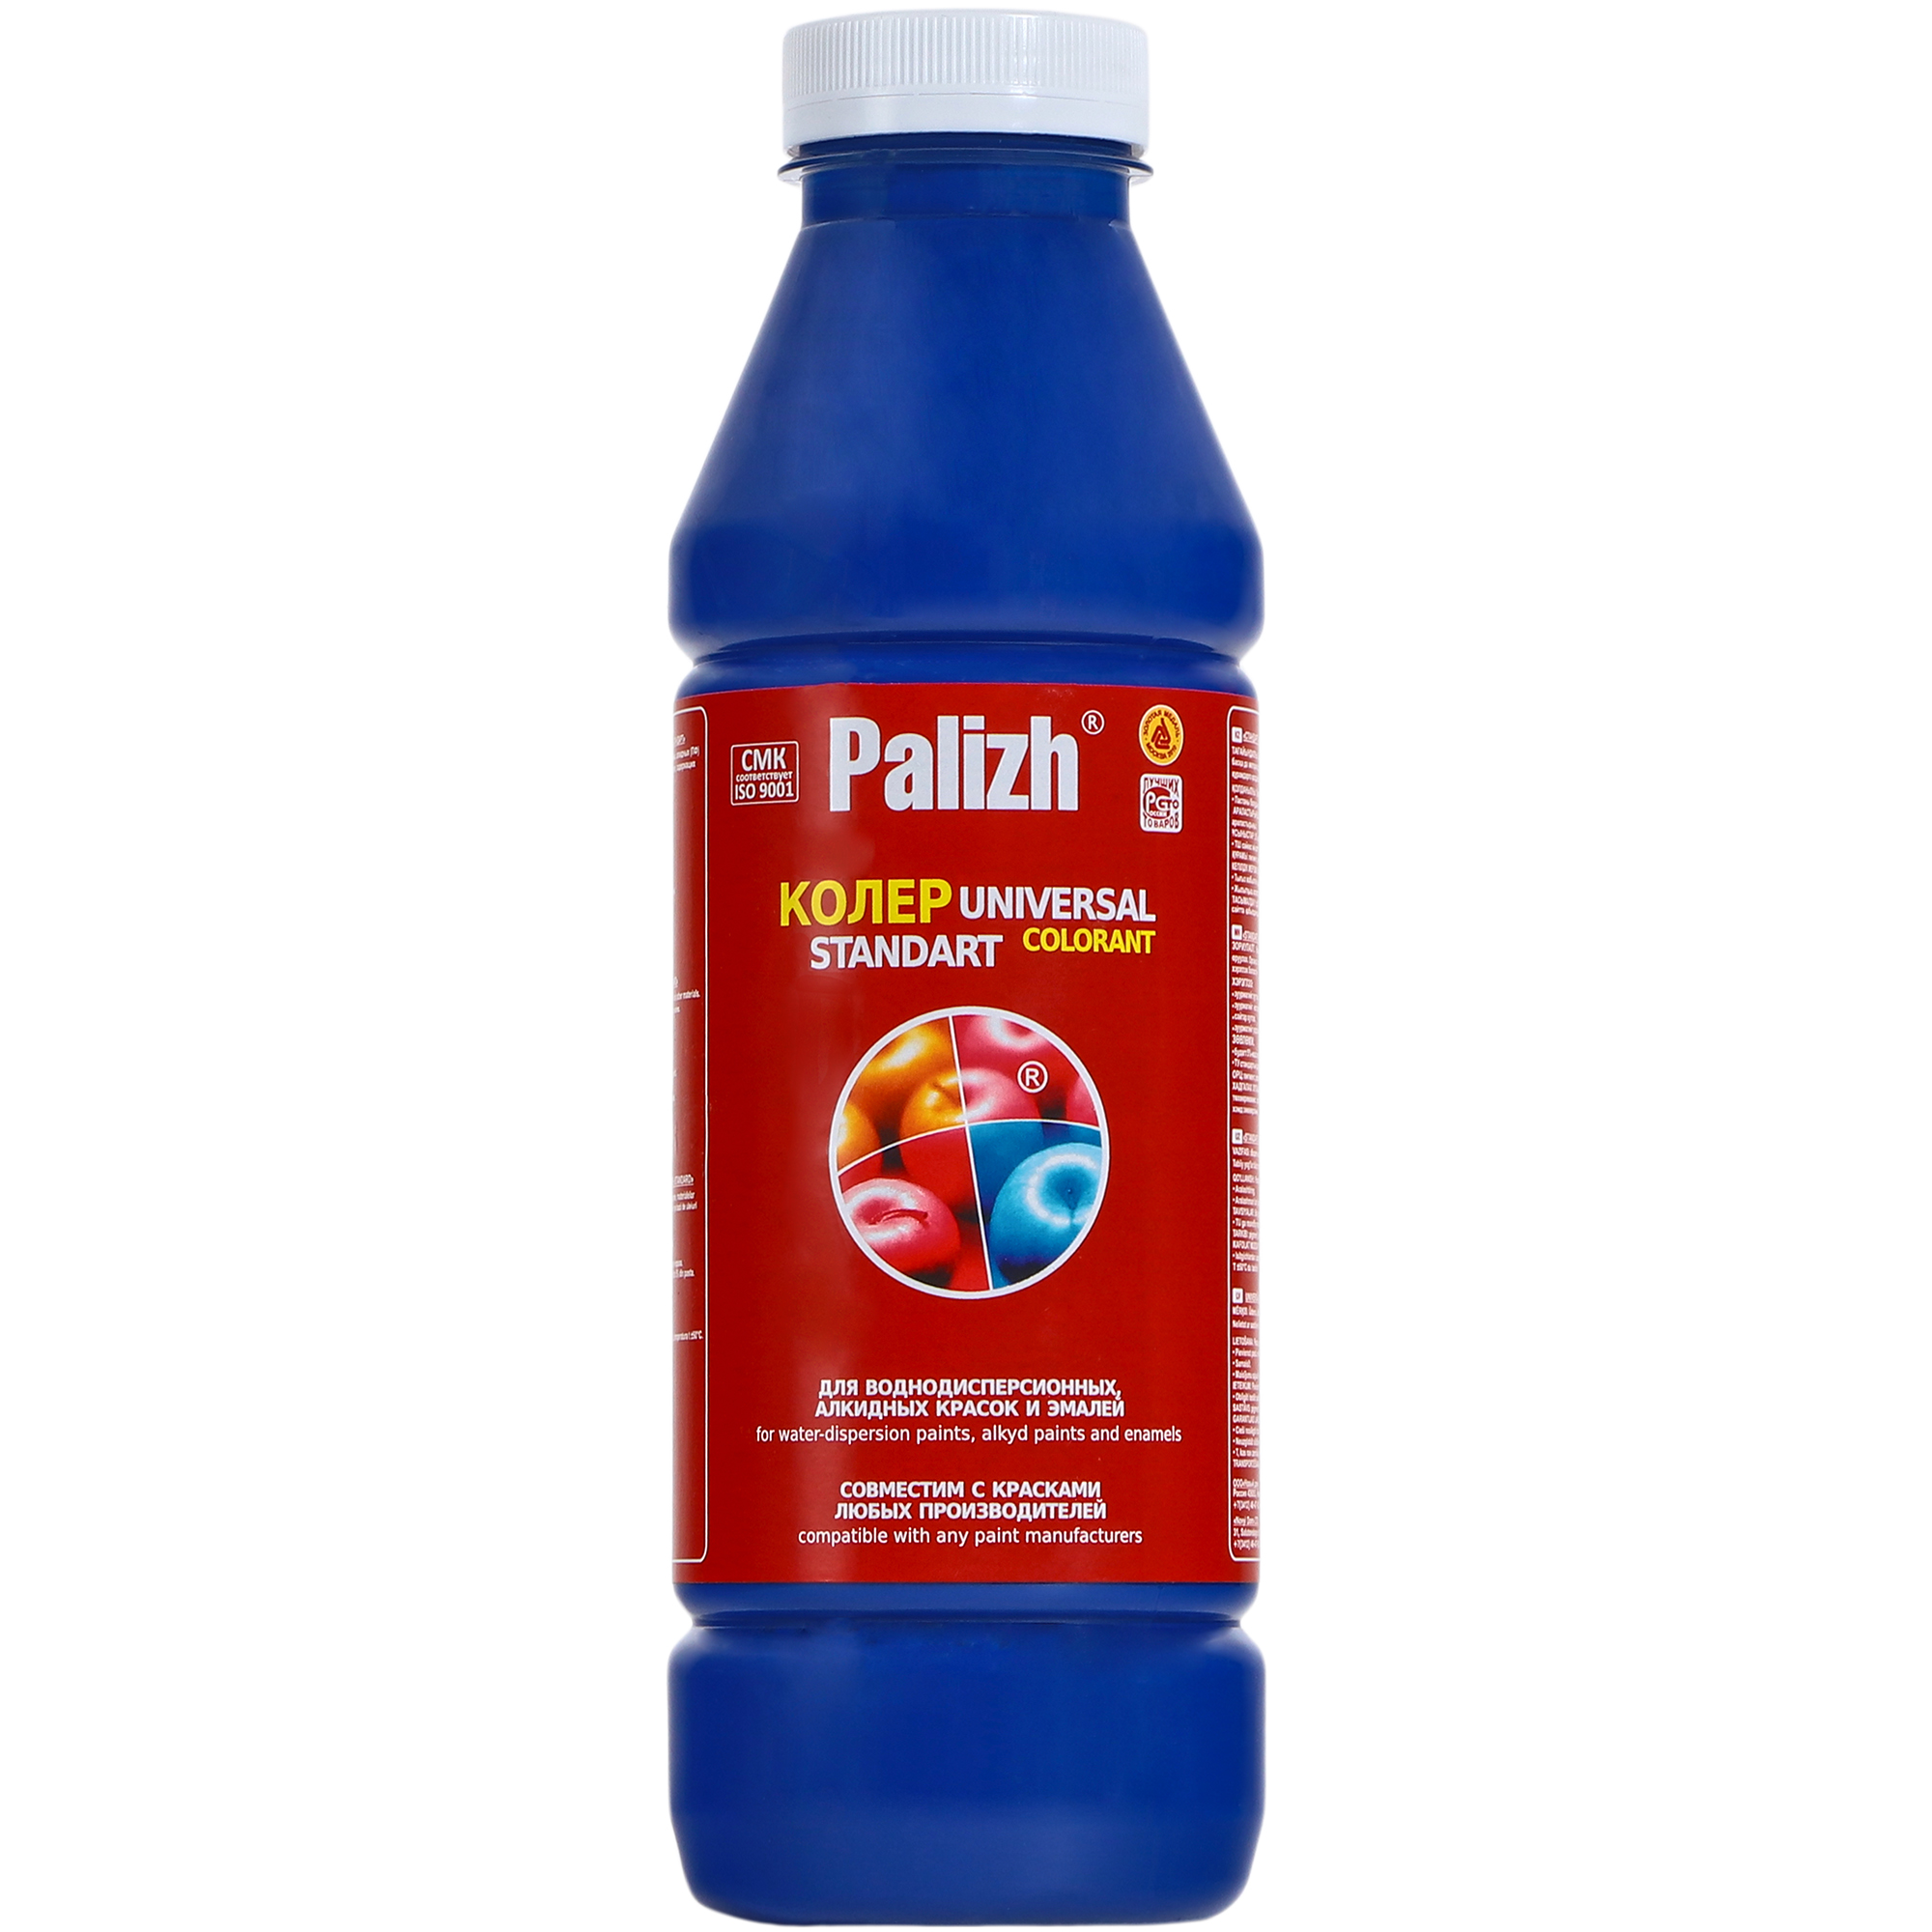 Паста универсальная колеровочная Palizh ультрамарин - 900 мл паста универсальная колеровочная palizh пурпурный 100 мл